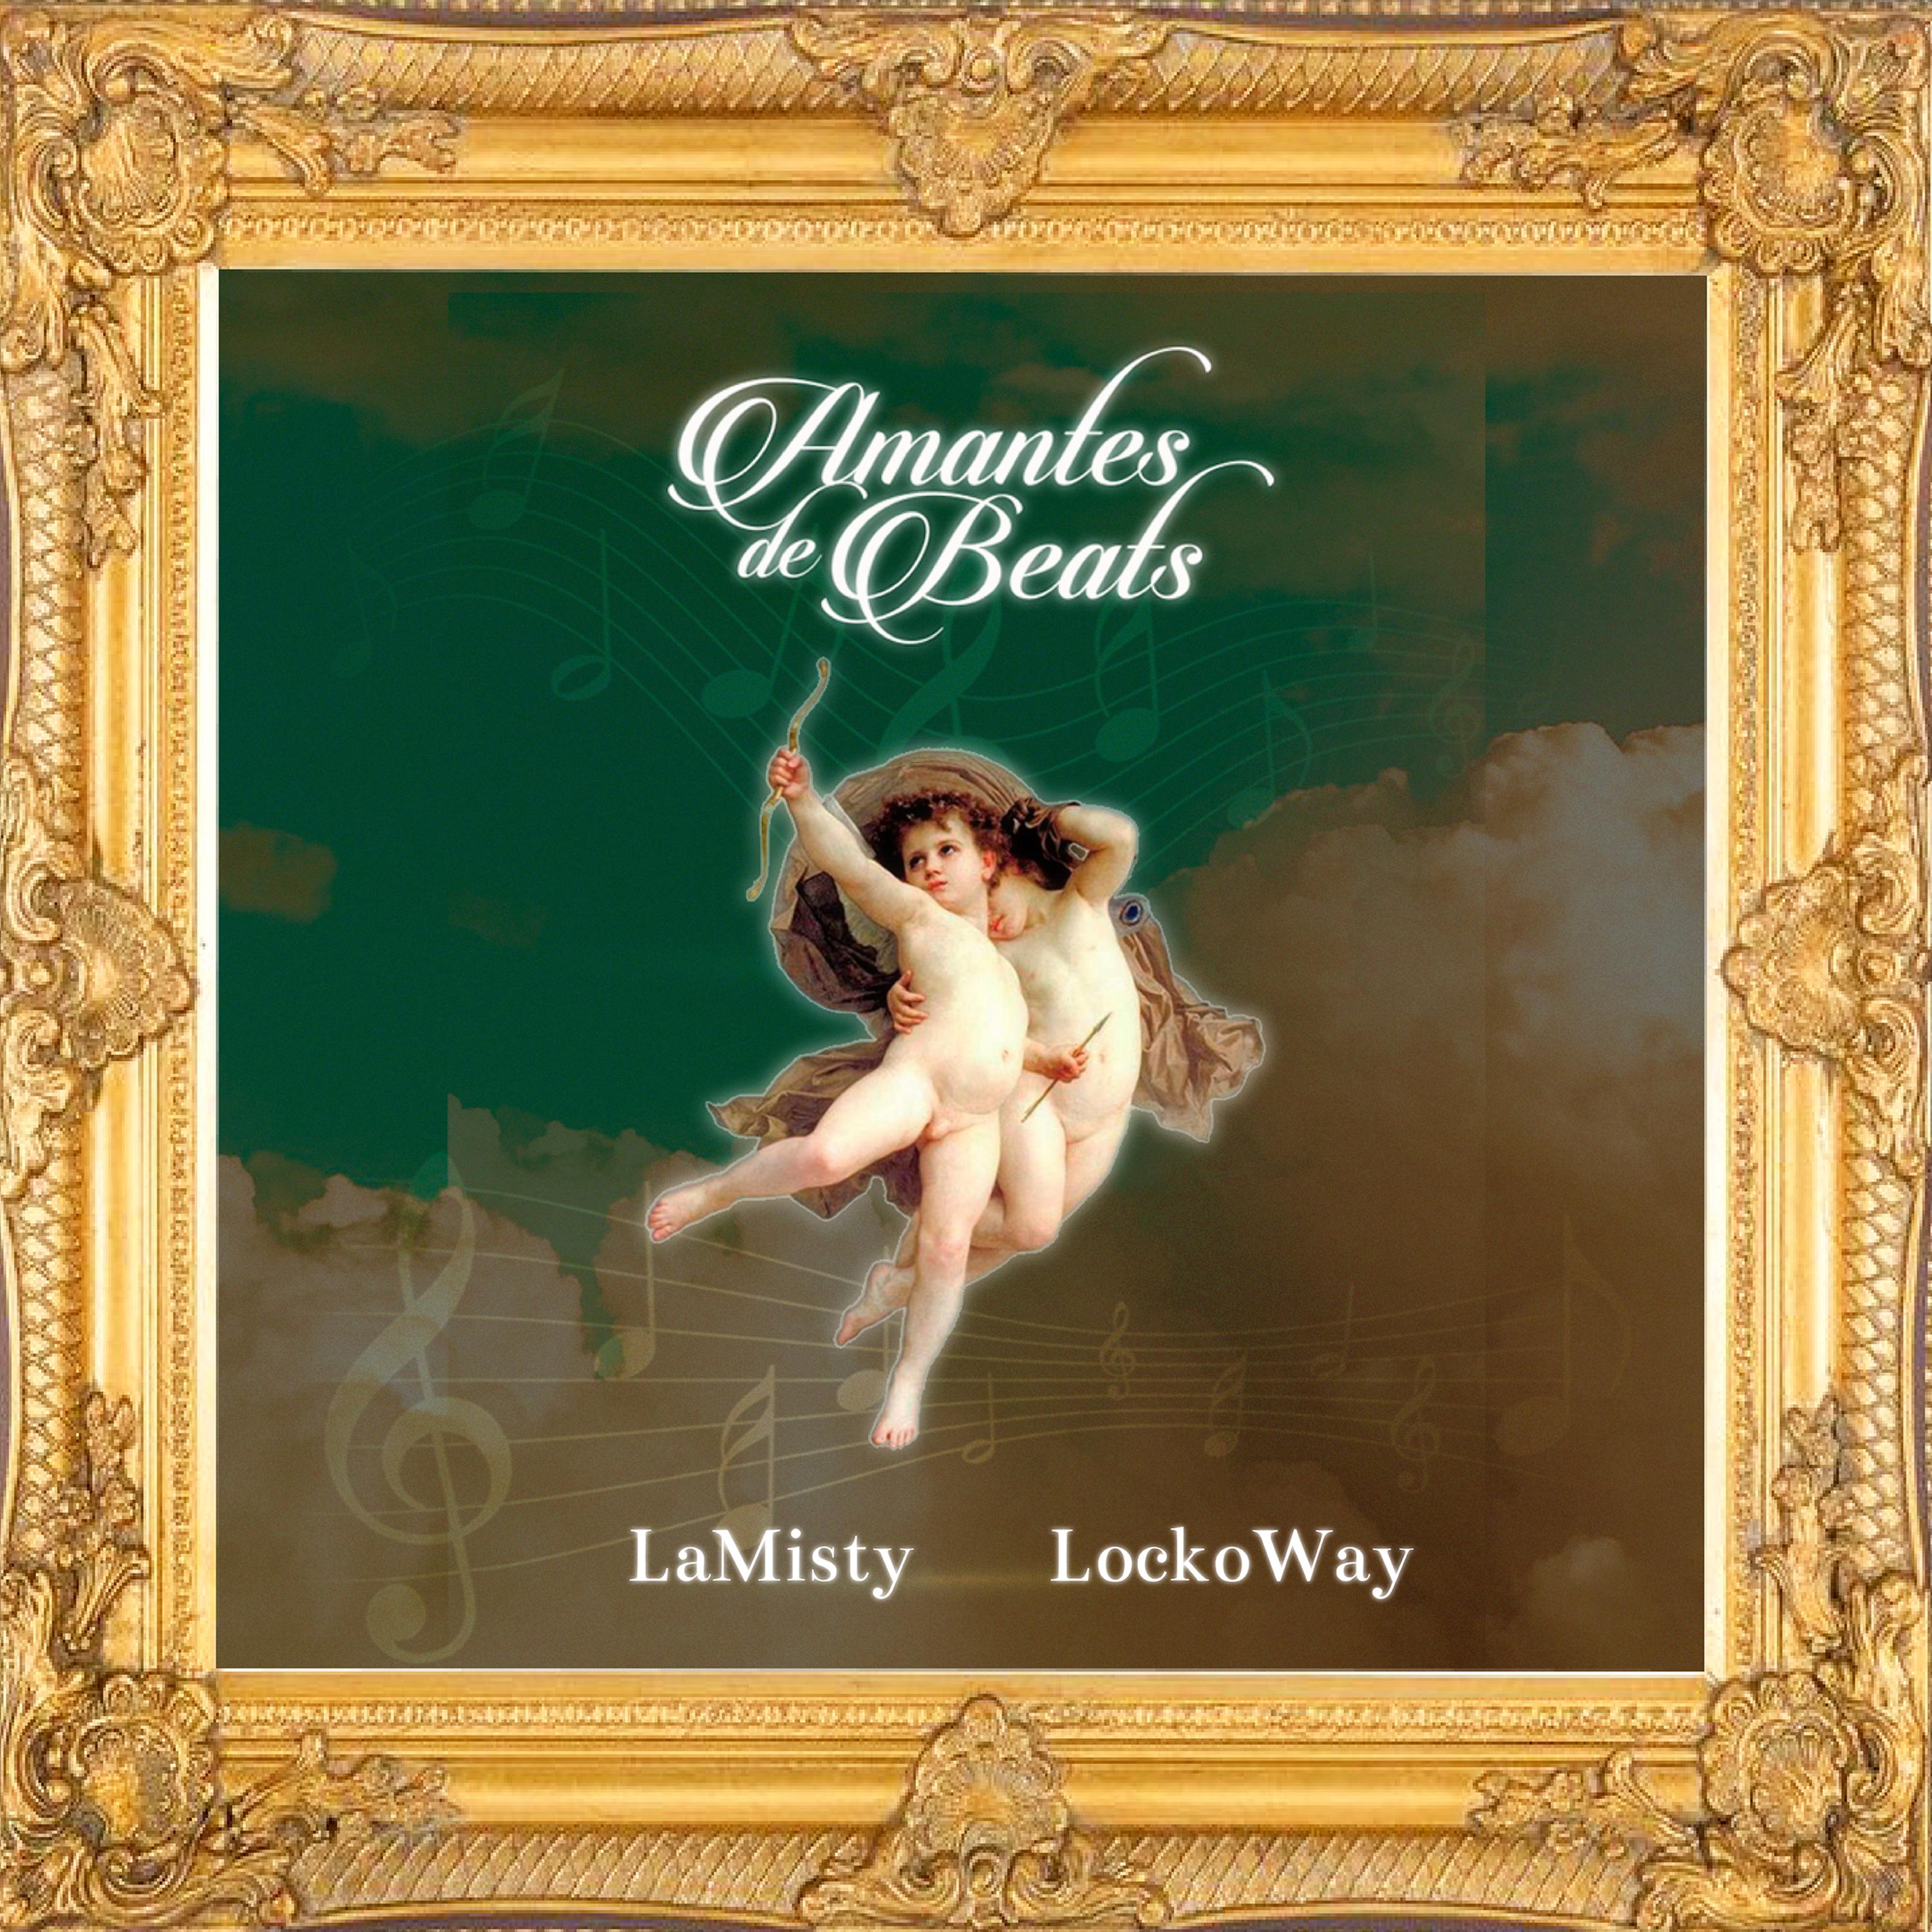 Lamisty - Amantes de Beats